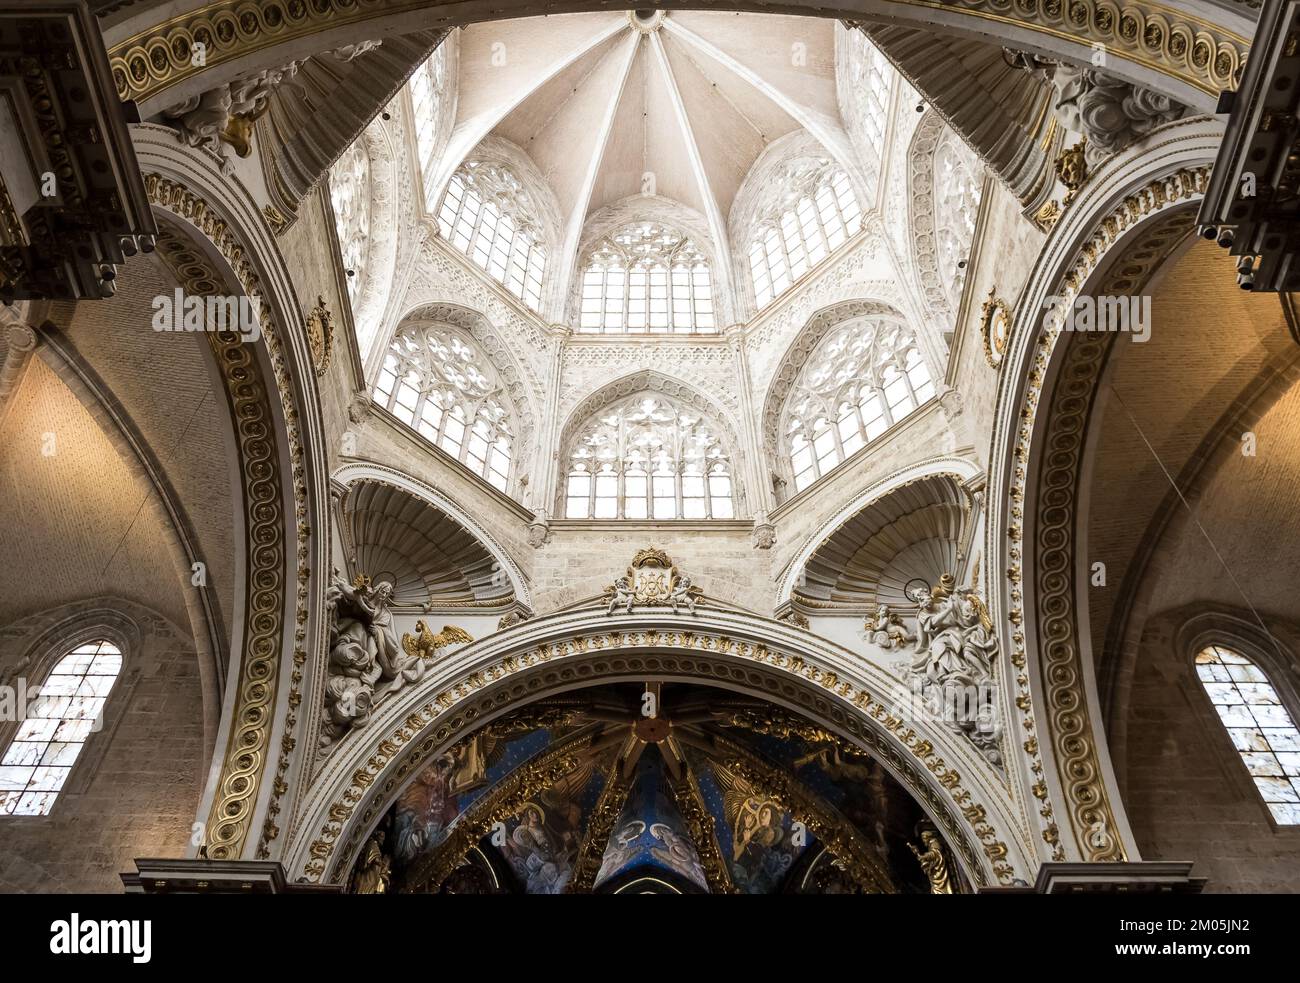 Détail architectural de la cathédrale de Valence, également connue sous le nom de cathédrale Sainte-Marie, une église catholique romaine dans le centre-ville historique de la ville Banque D'Images